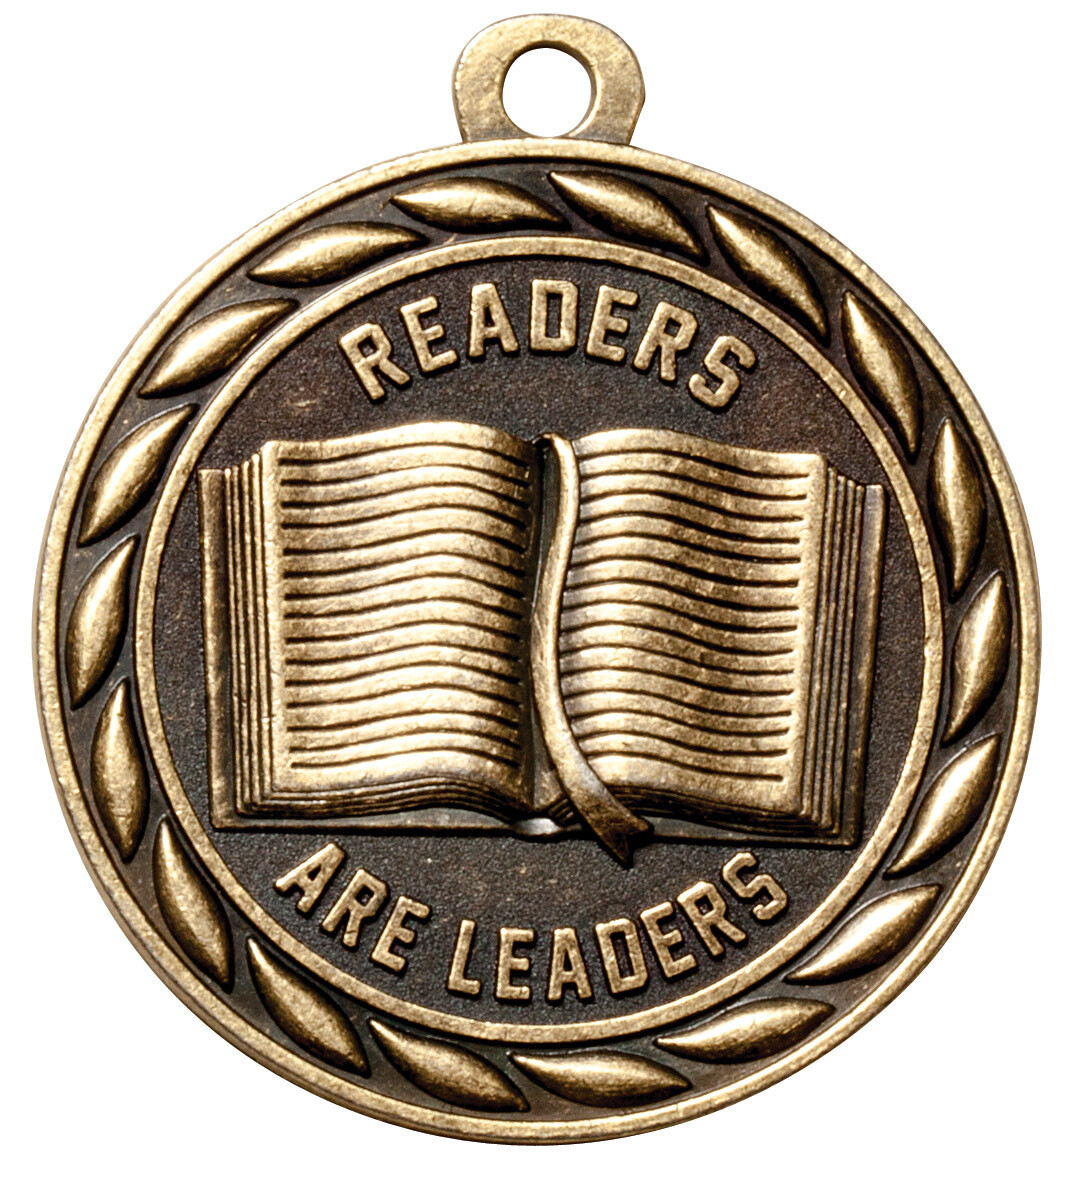 Scholastic Medal Series
READERS ARE LEADERS